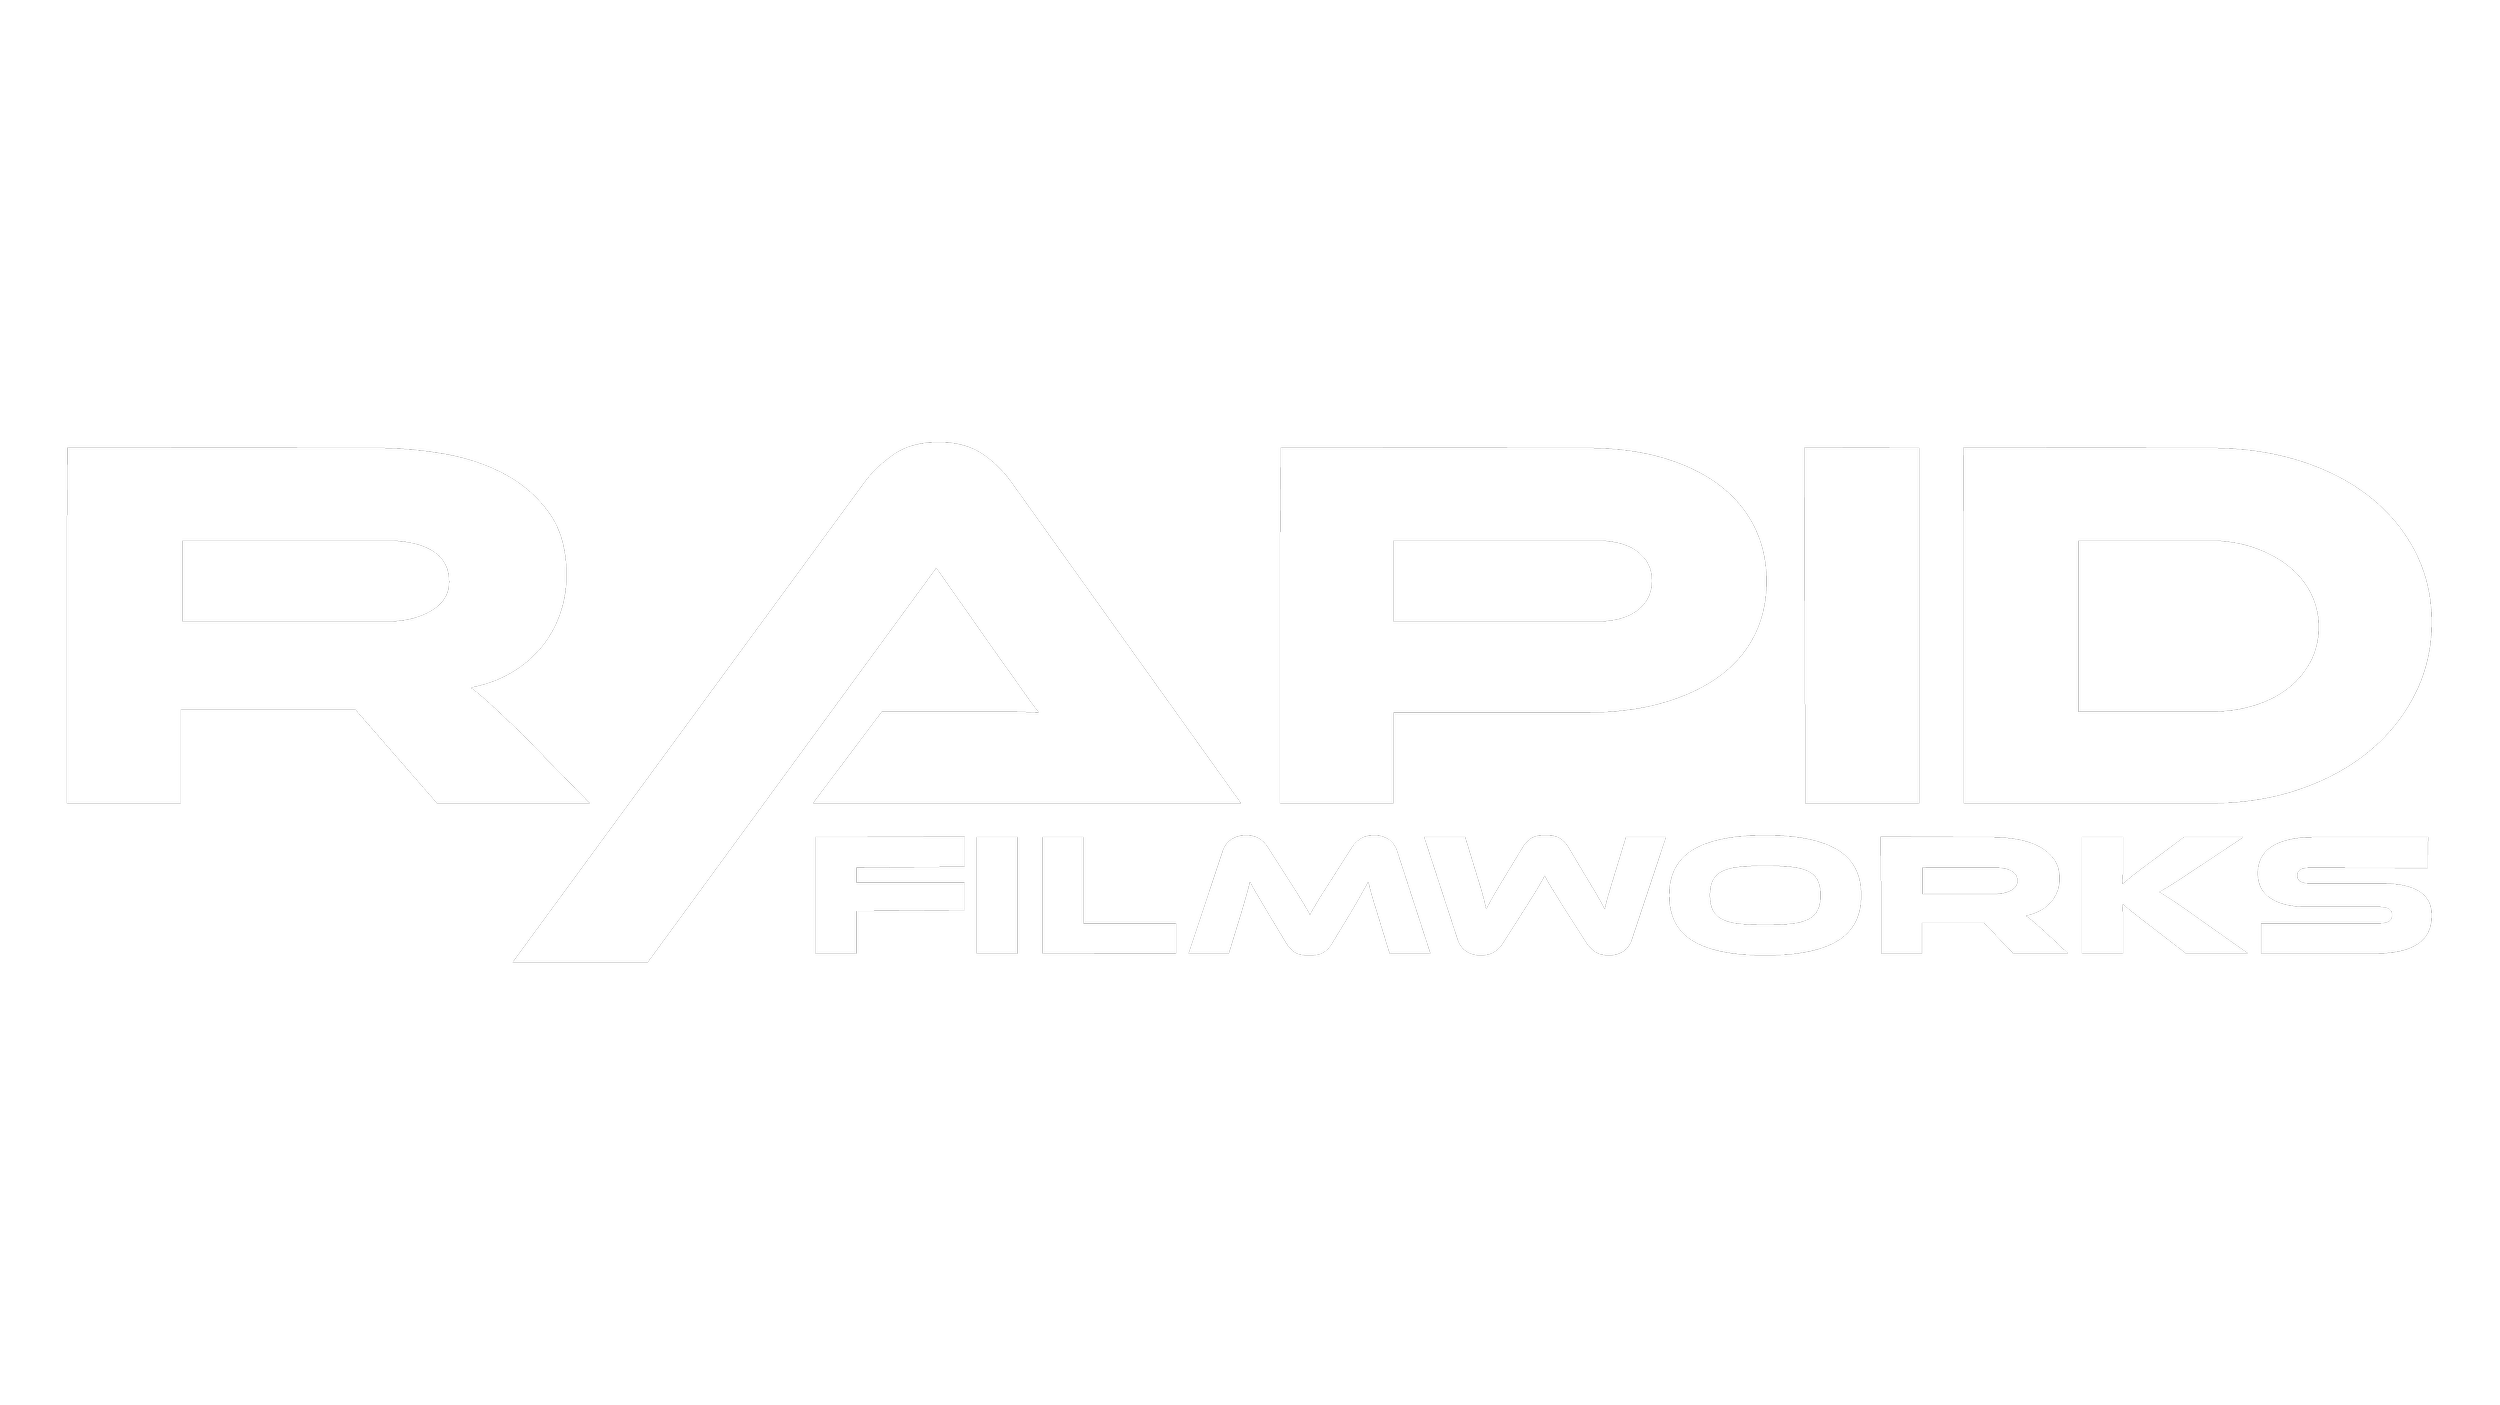 RAPID FILMWORKS